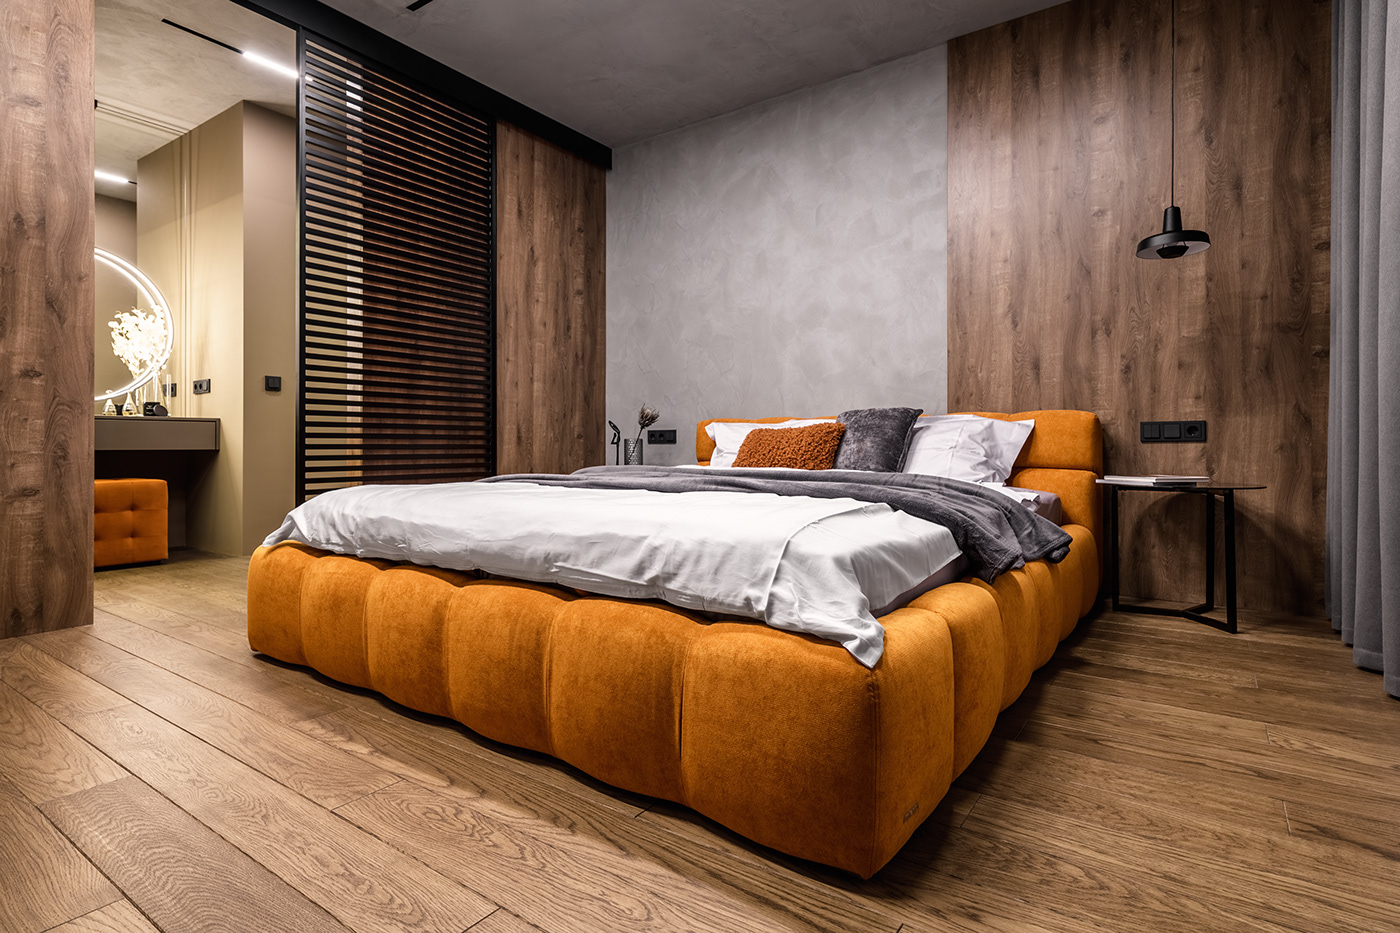 apartment confident design flat grey Interior interiordesign Lviv ukraine usa